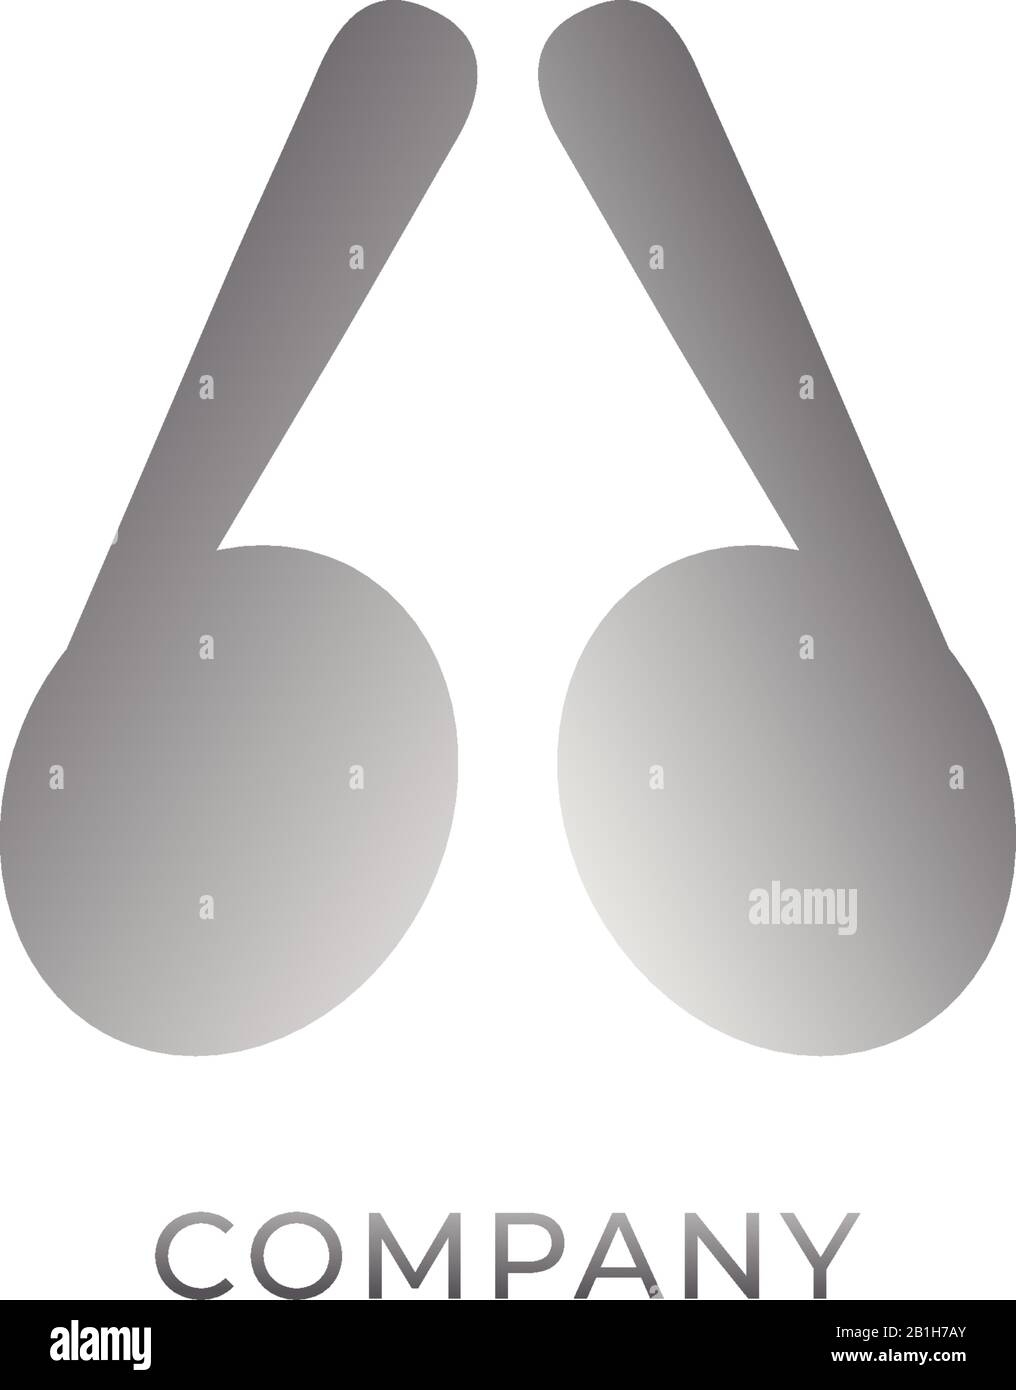 Kleinbuchstabe bd Alphabet Logo Design Template isoliert auf weißem Hintergrund. Graues Symbol für TWS-Ohrhörer abgebildet. Bildlogotyp des Monogramms Stock Vektor